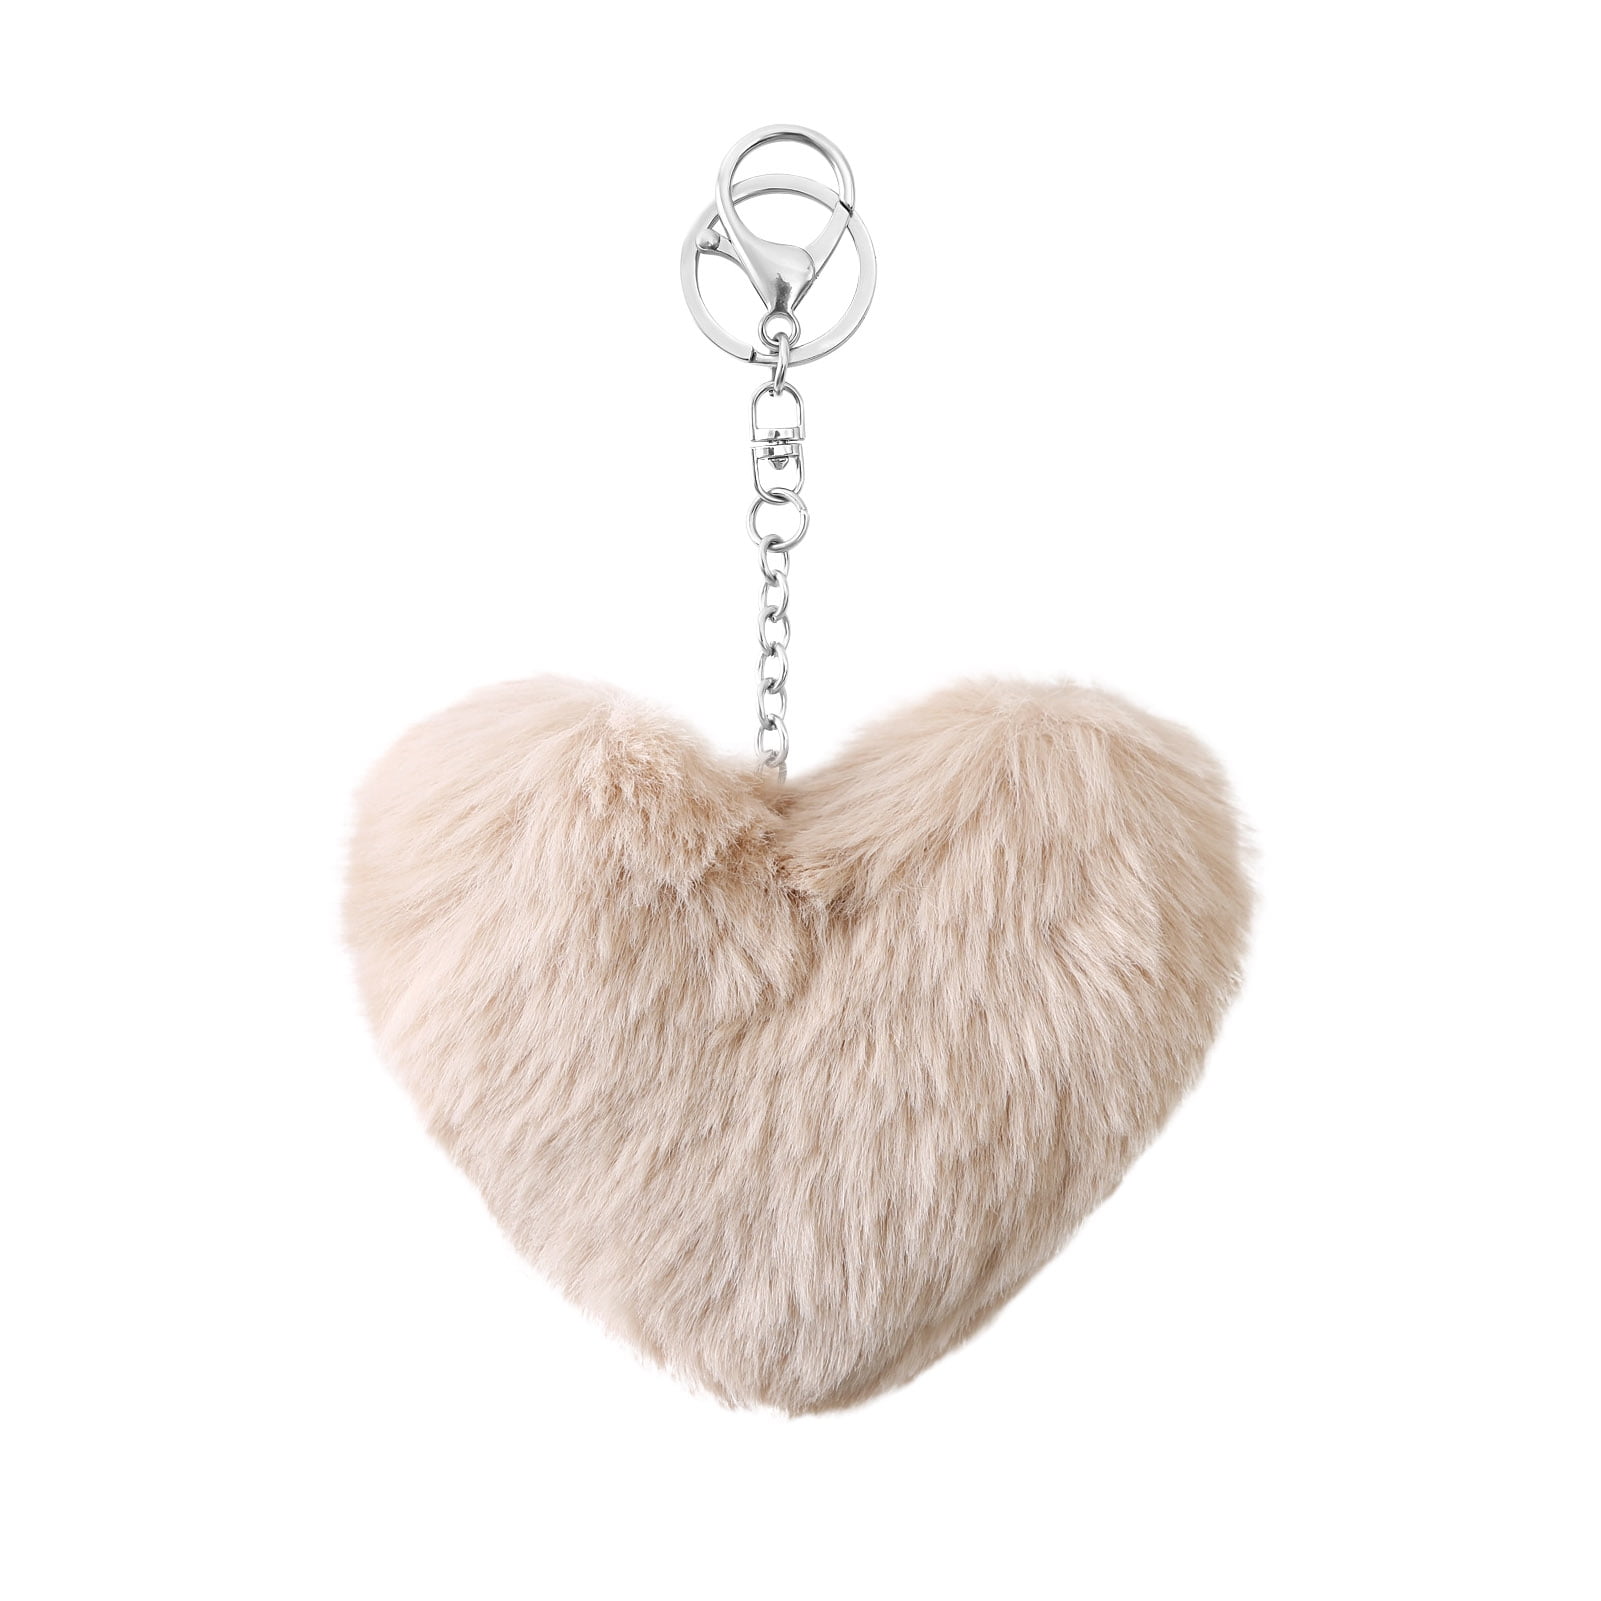 Fluffy Faux Fur Heart Pom Pom Keychain Key Ring Handbag Accessory Soft 